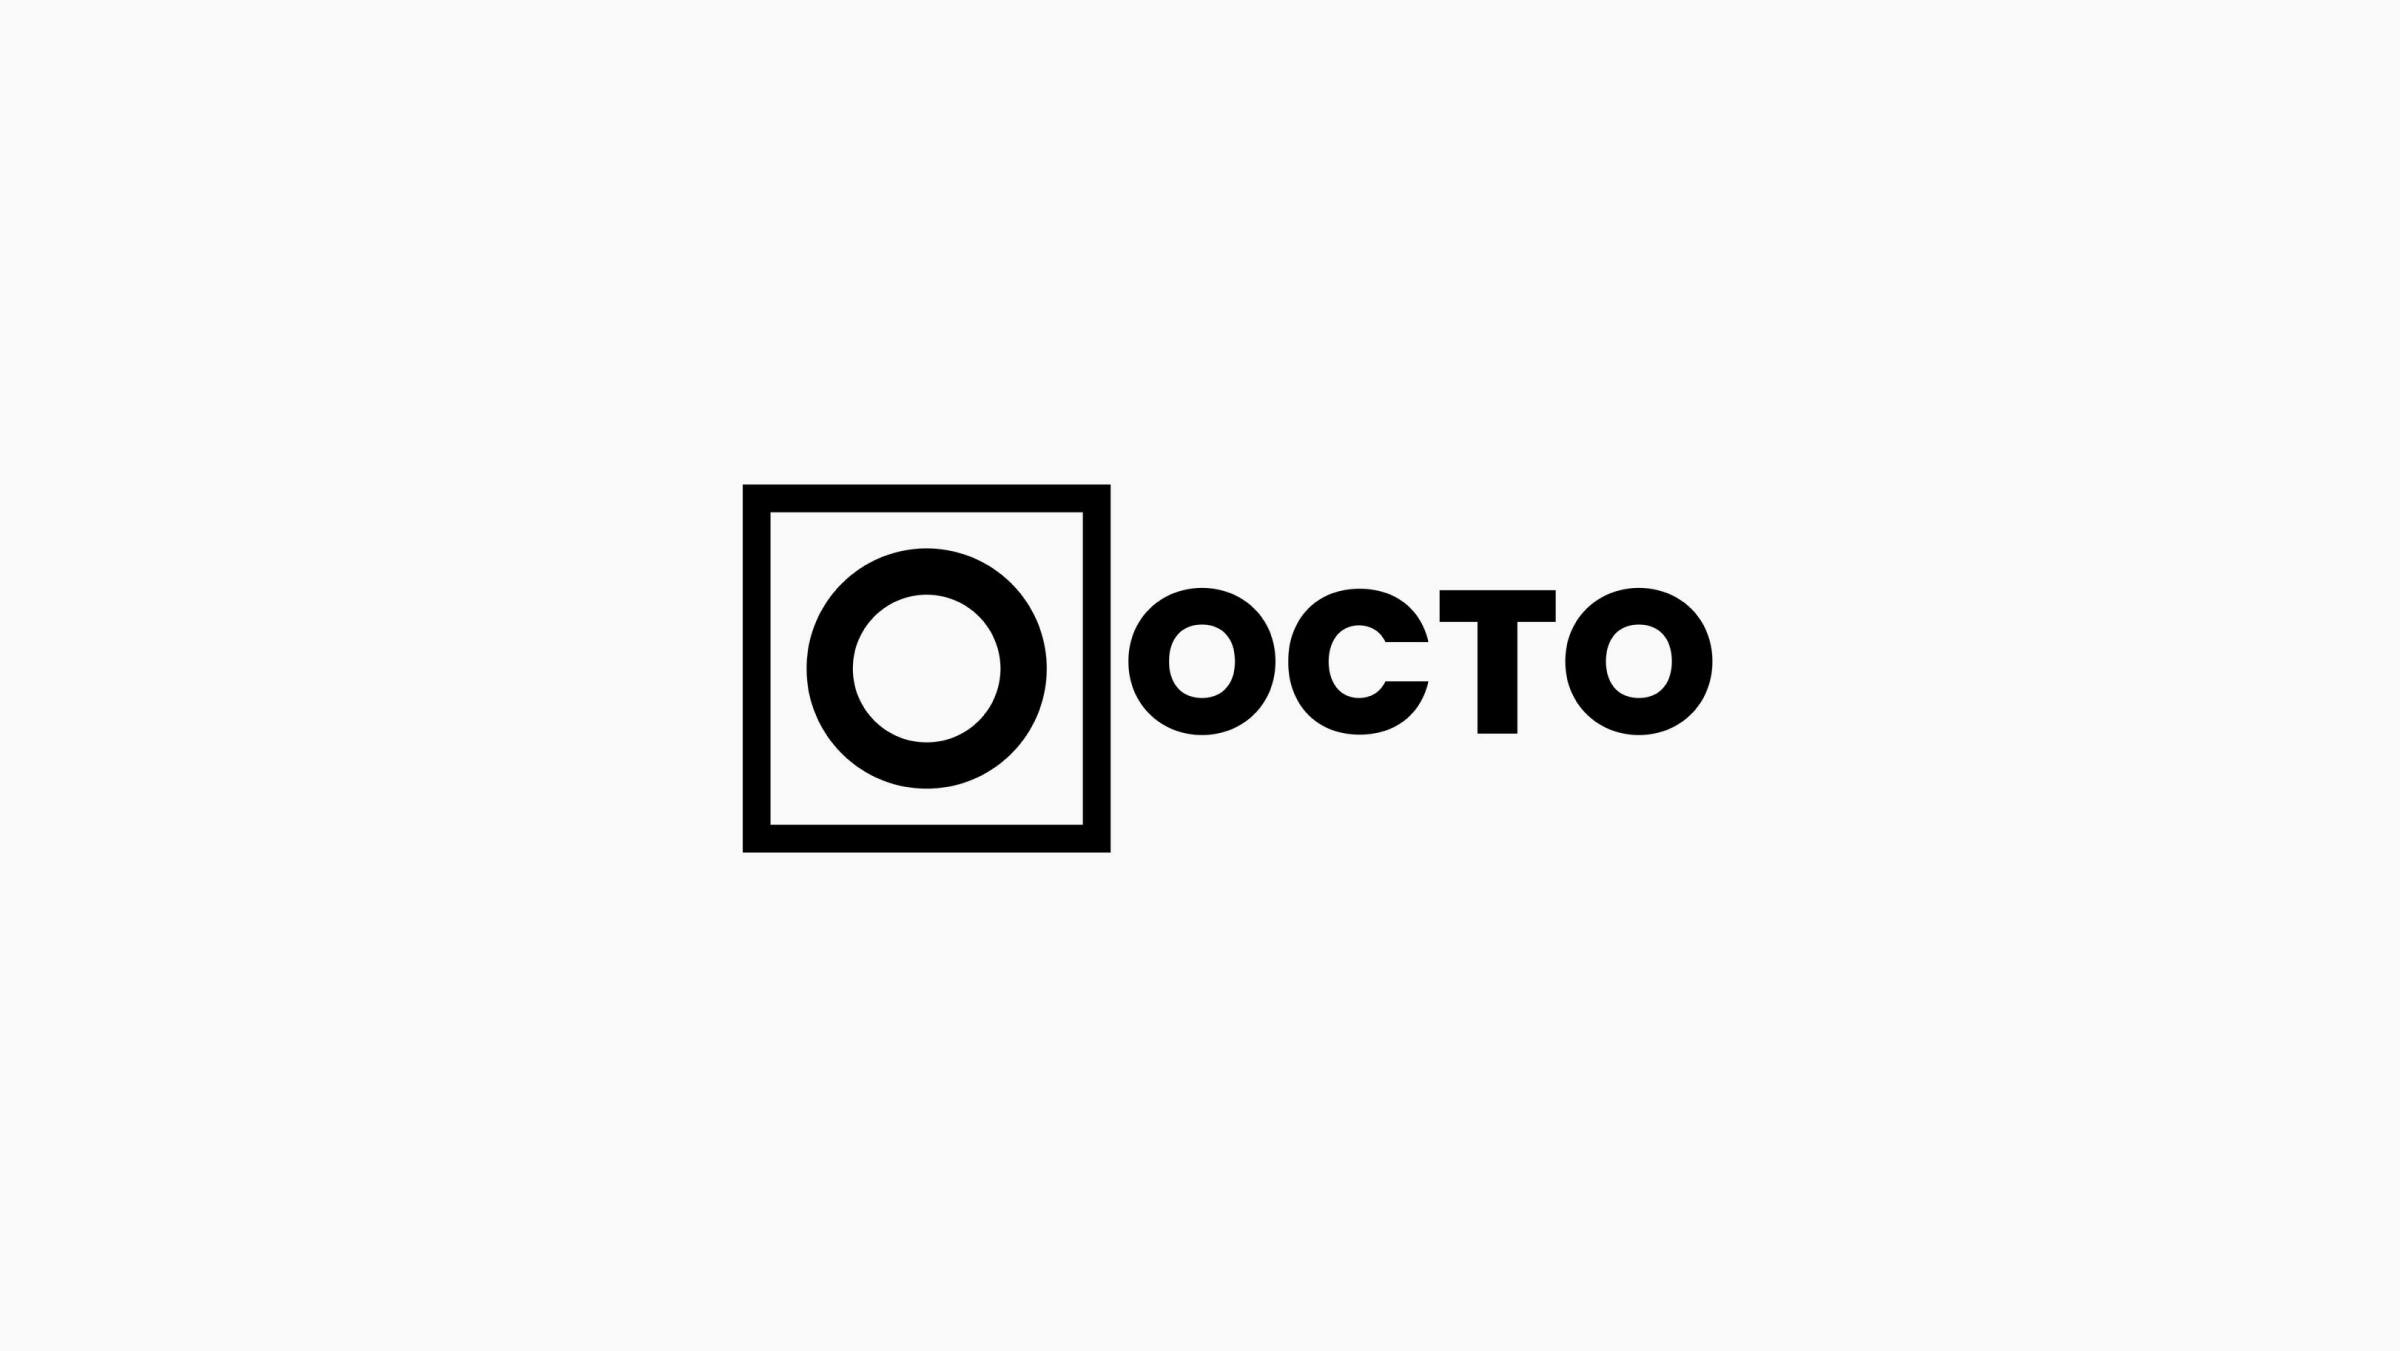 The Octo logo